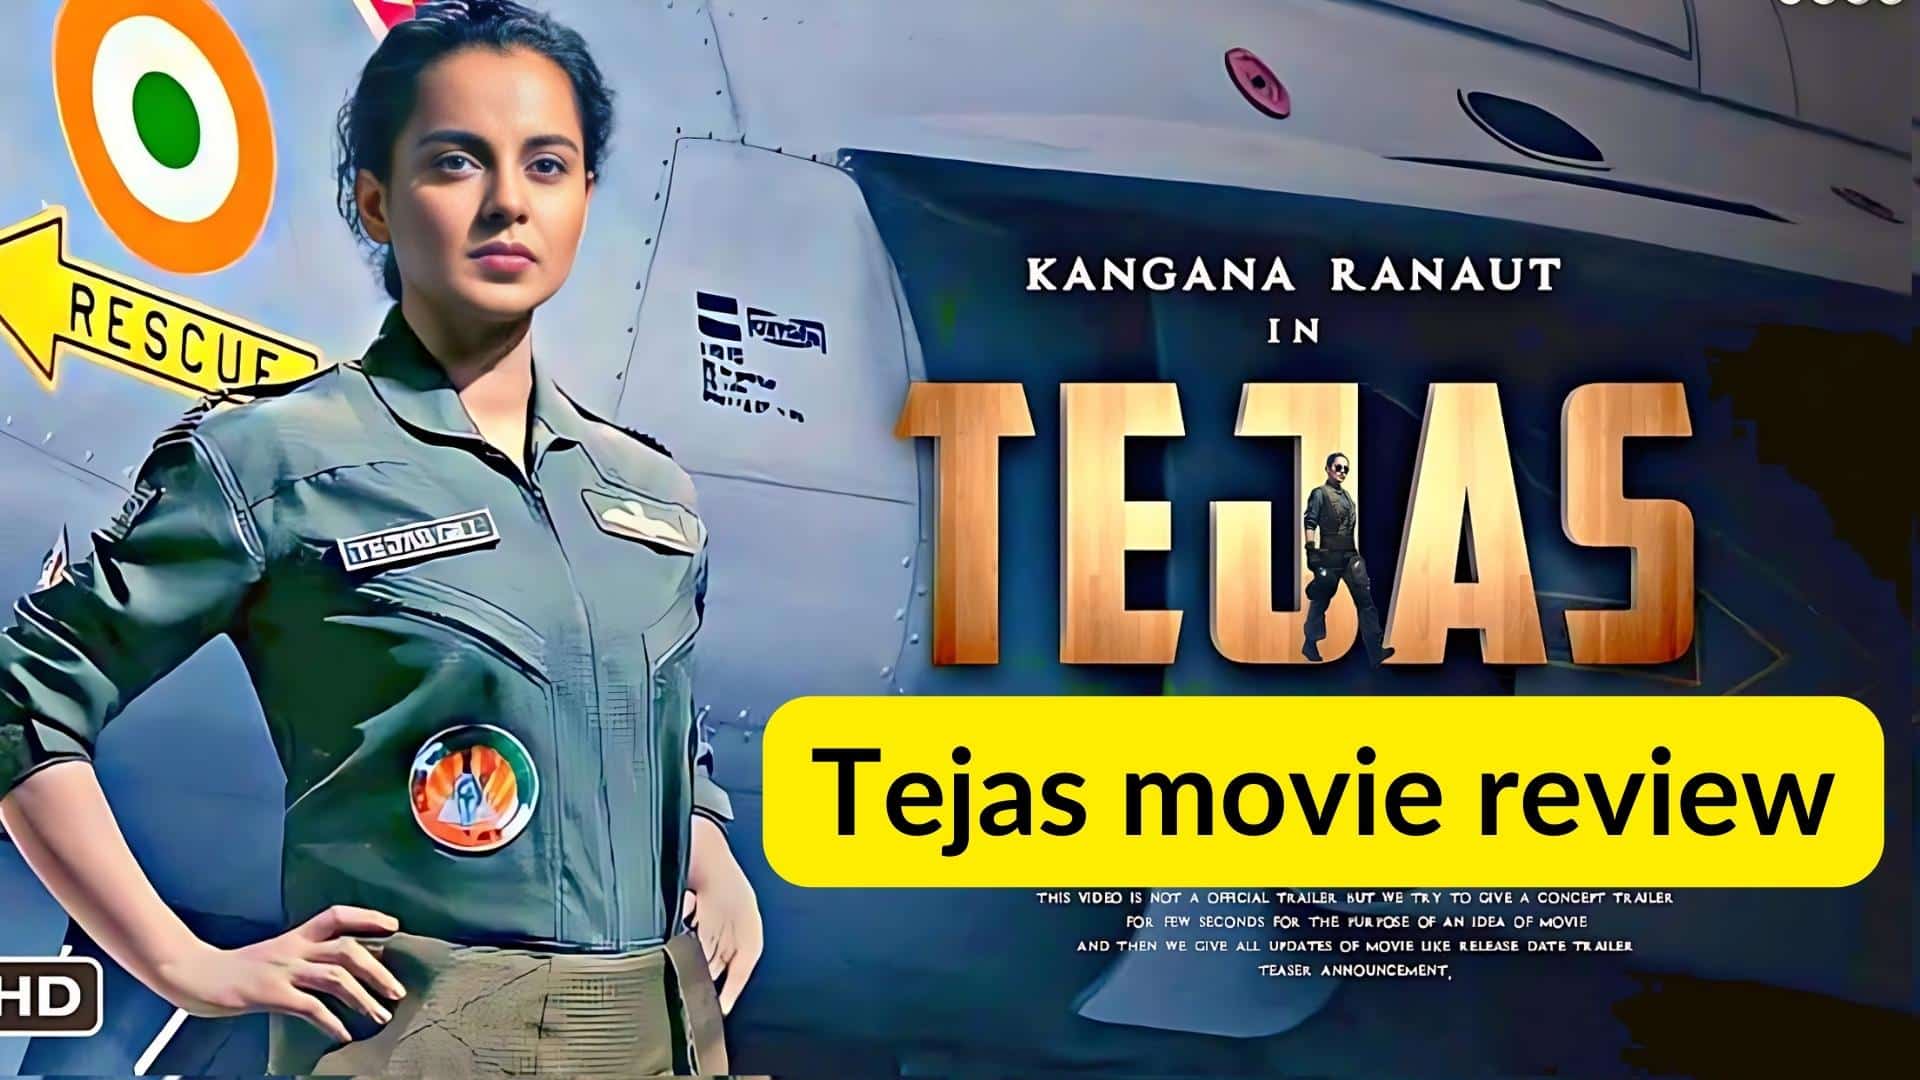 Tejas movie review: कंगना रनौत की फिल्म Tejas को दर्शकों से मिले-जुले रिव्यू मिल रहे हैं